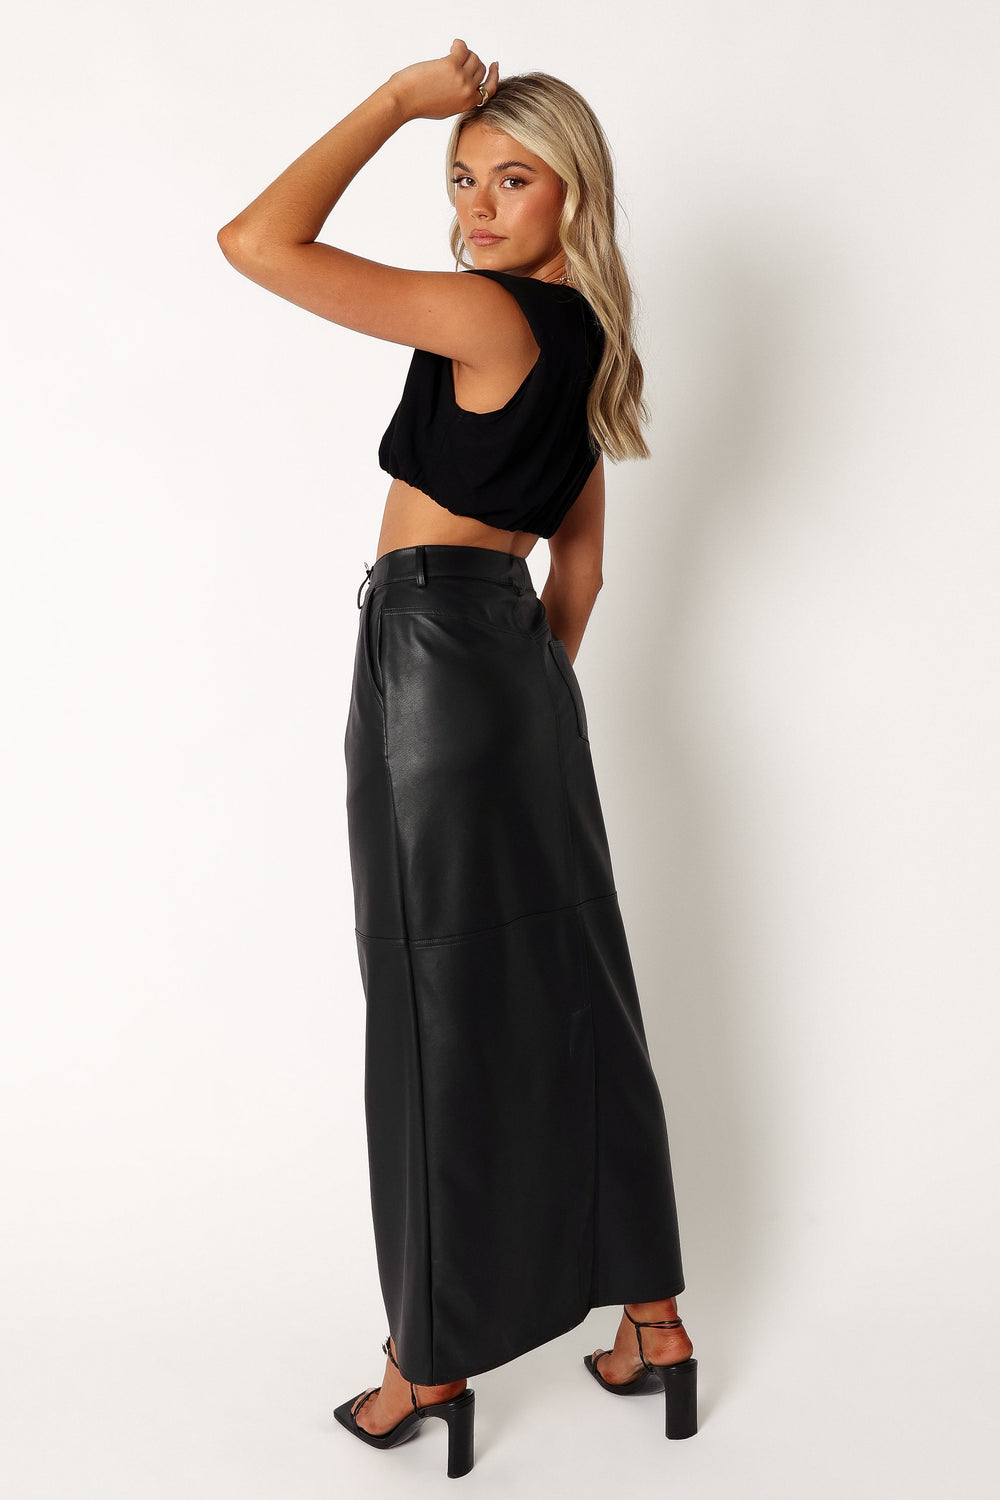 Petal and Pup USA BOTTOMS Jade Vegan Leather Column Skirt - Black